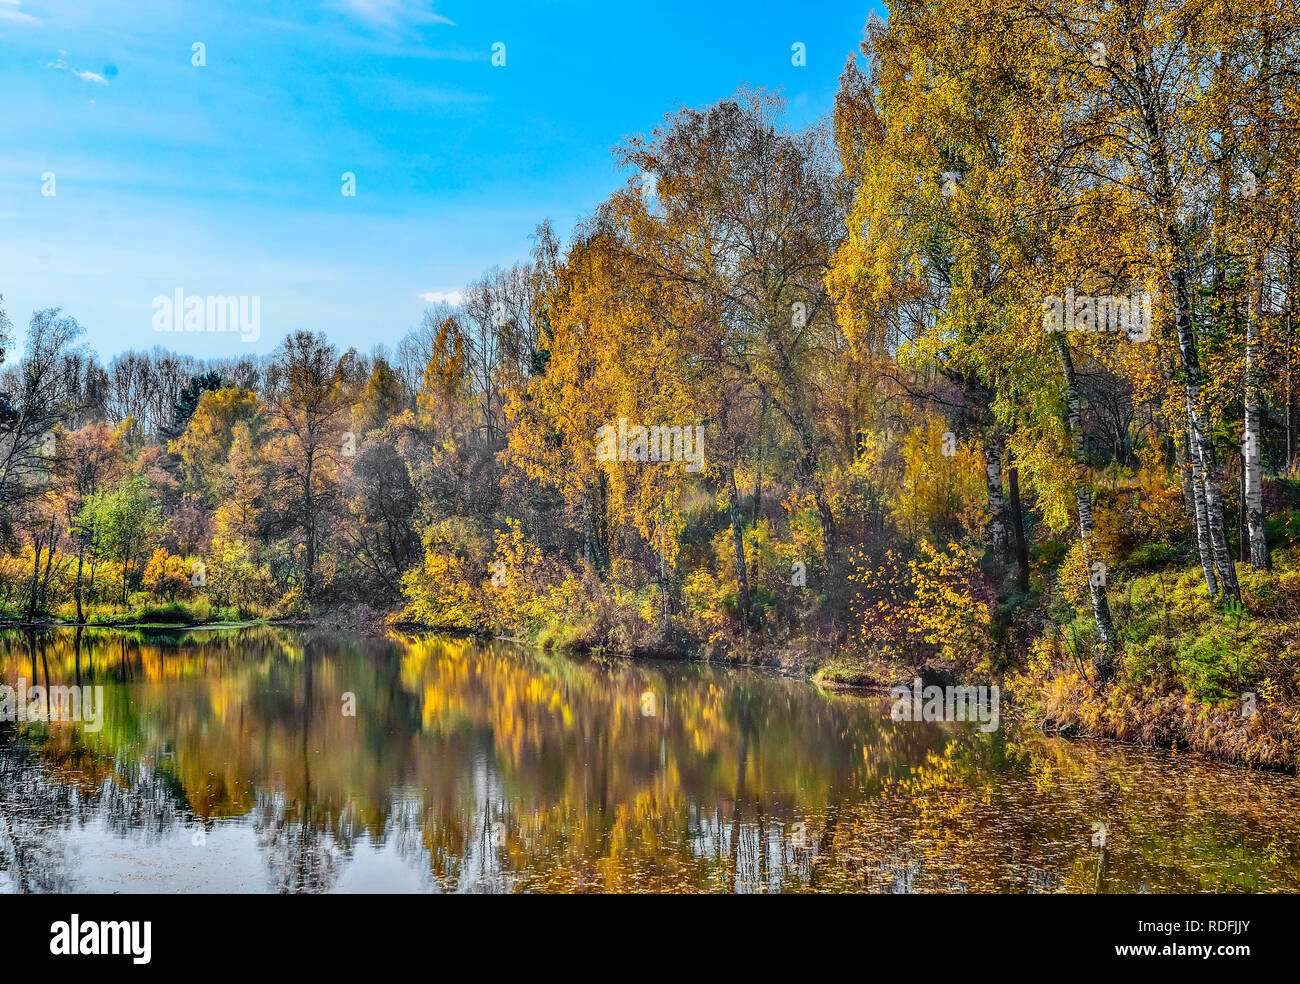 Goldene Laub Herbst Bäume rund um den See im Wasser des Sees spiegelt - Herbst malerische Landschaft an warmen und sonnigen September Wetter mit blauem Stockfoto